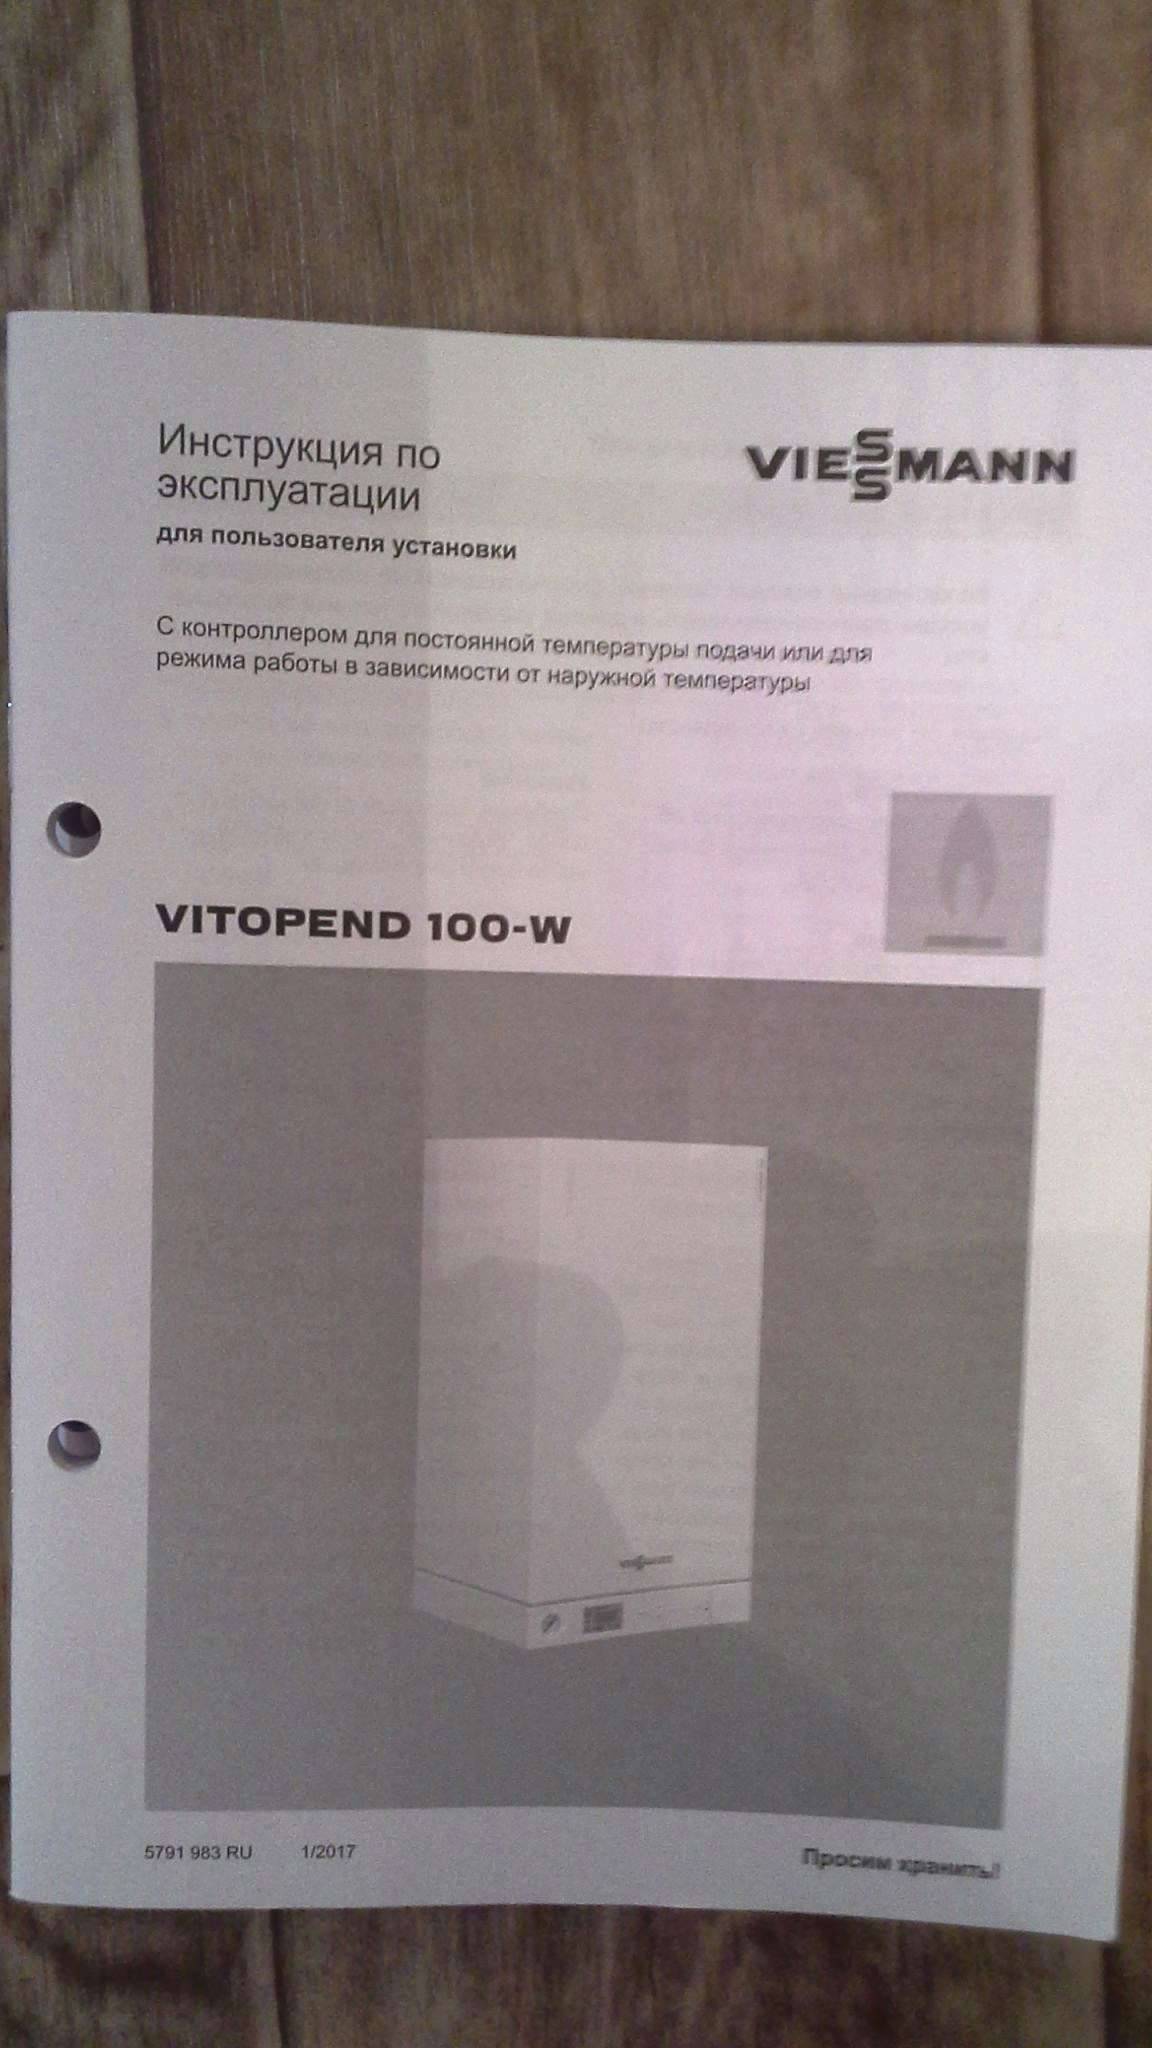 Настенная серия газовых котлов viessmann vitopend 100-w: основные неисправности, отзывы владельцев и инструкция по настройке прибора